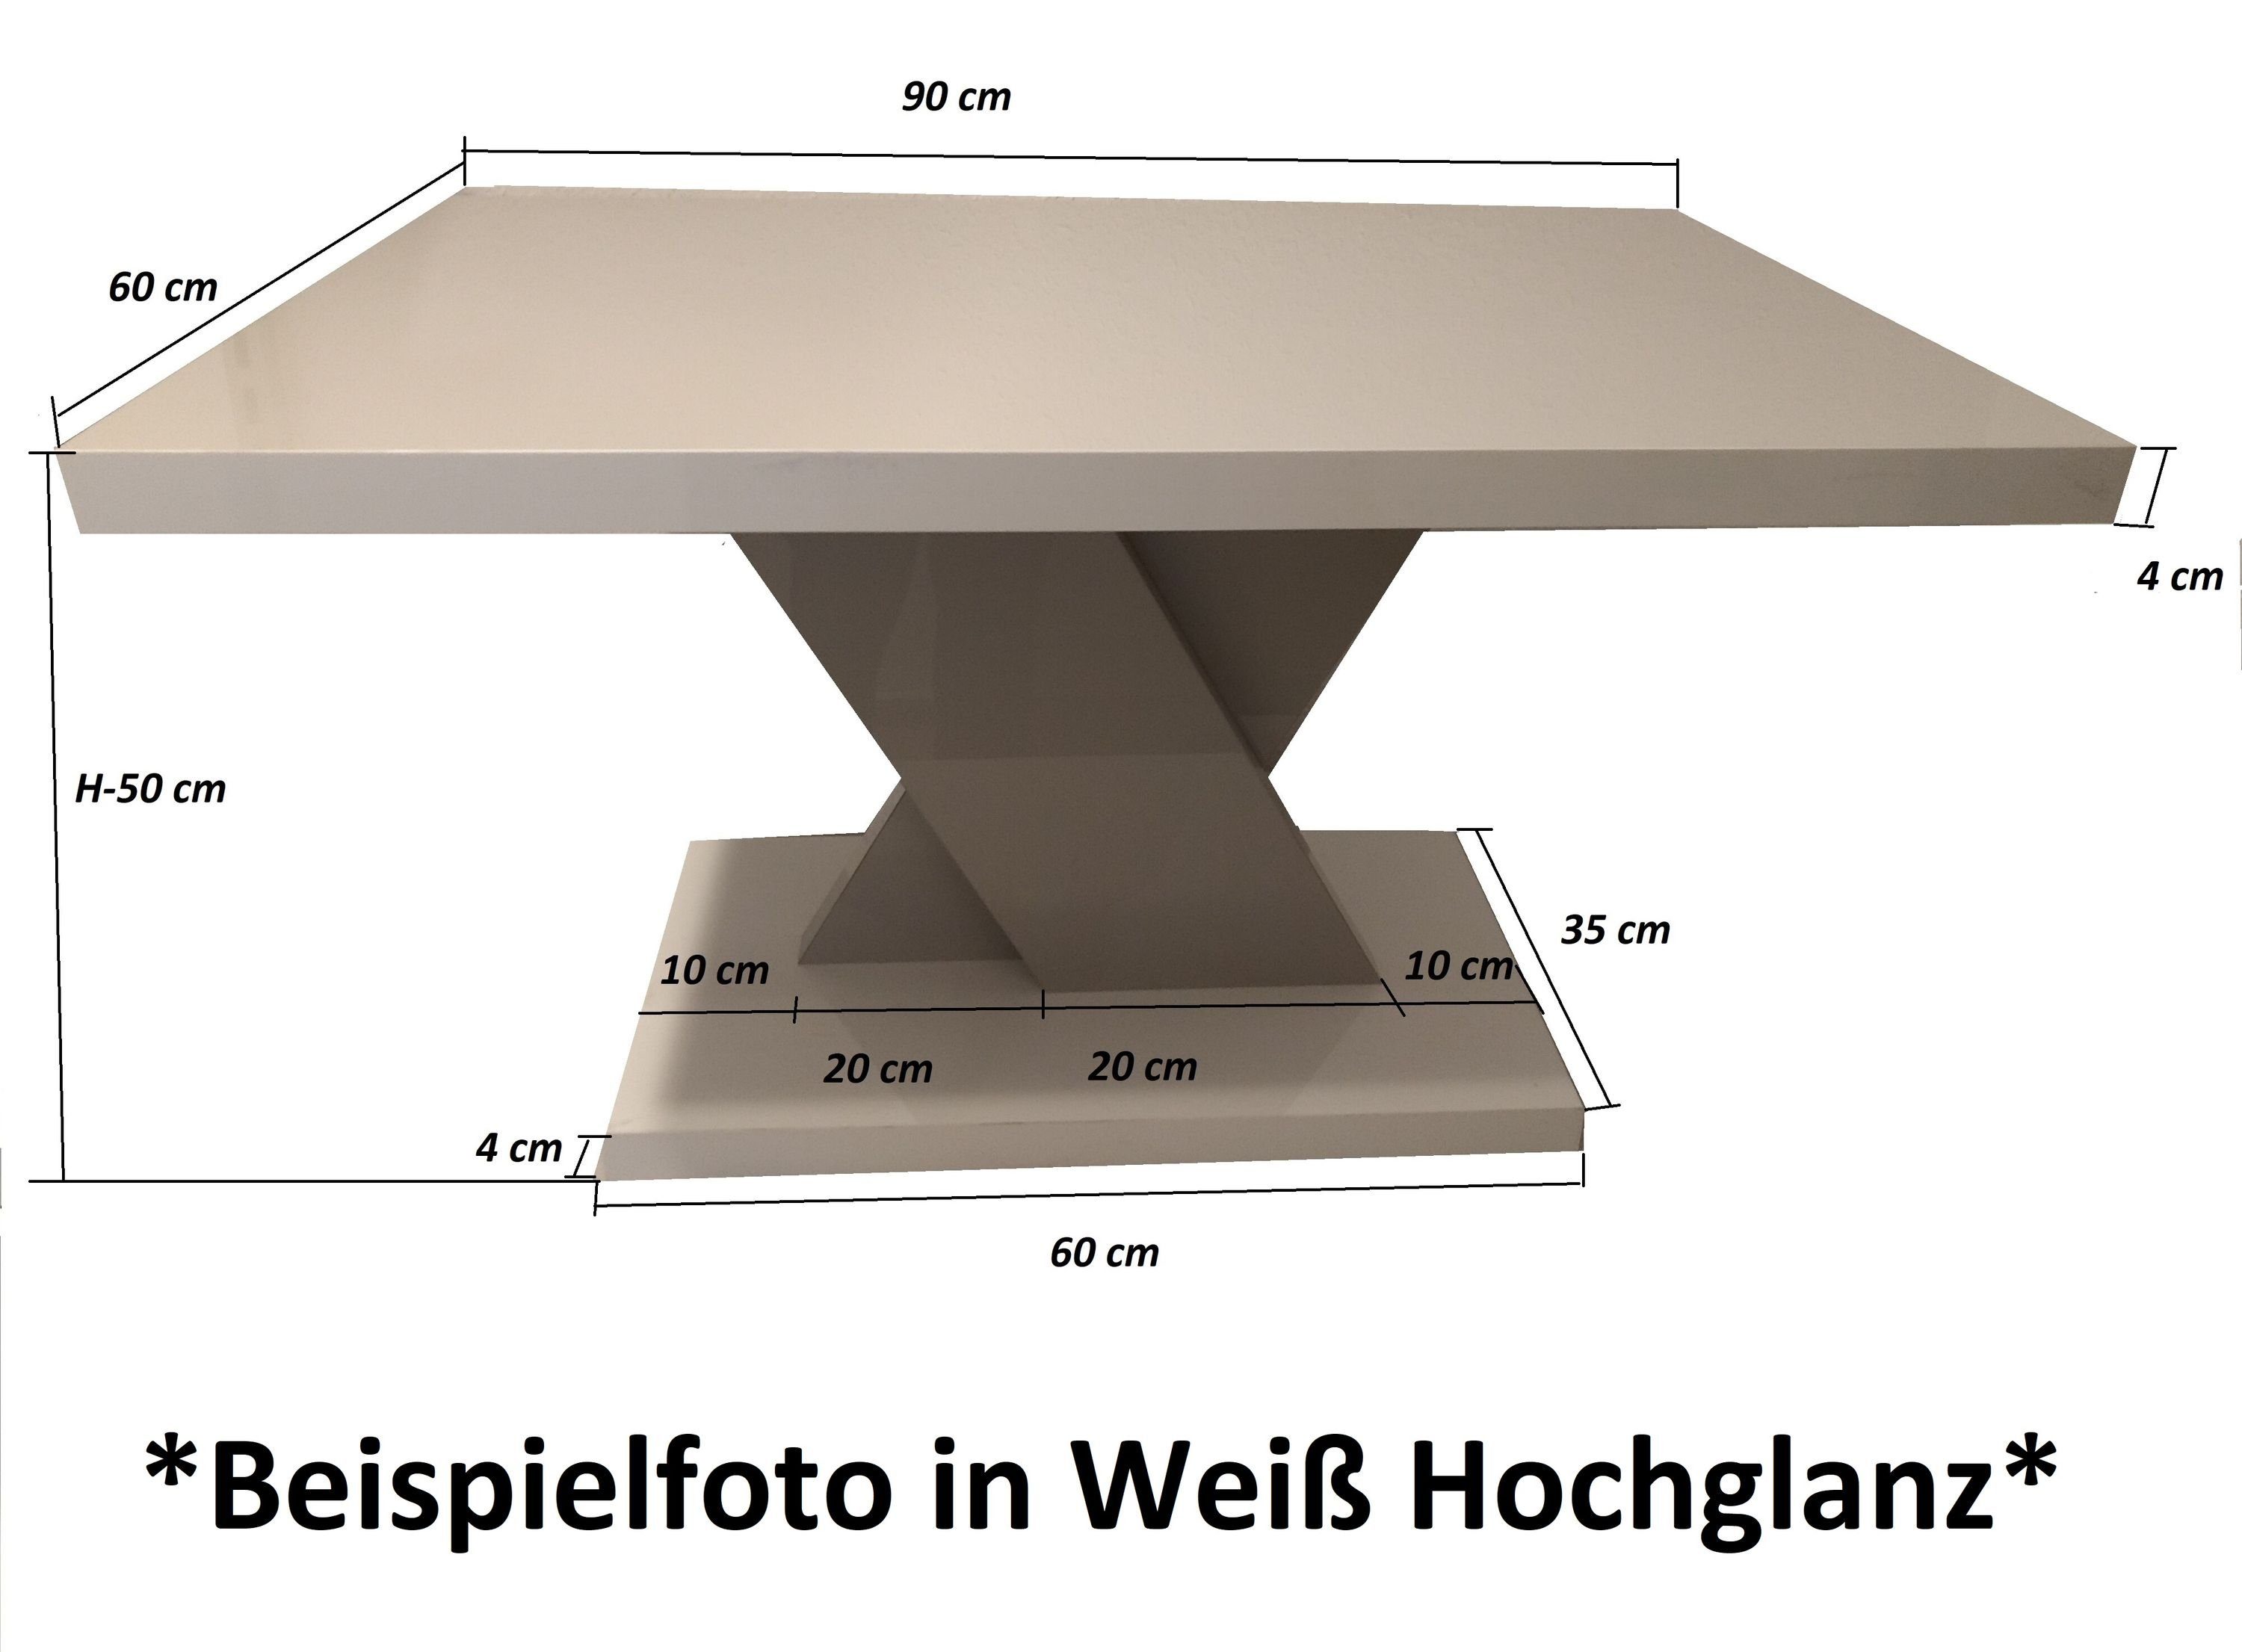 Design MA-111 Hochglanz 90x60x50cm Couchtisch Tisch Hochglanz Couchtisch Weiß designimpex